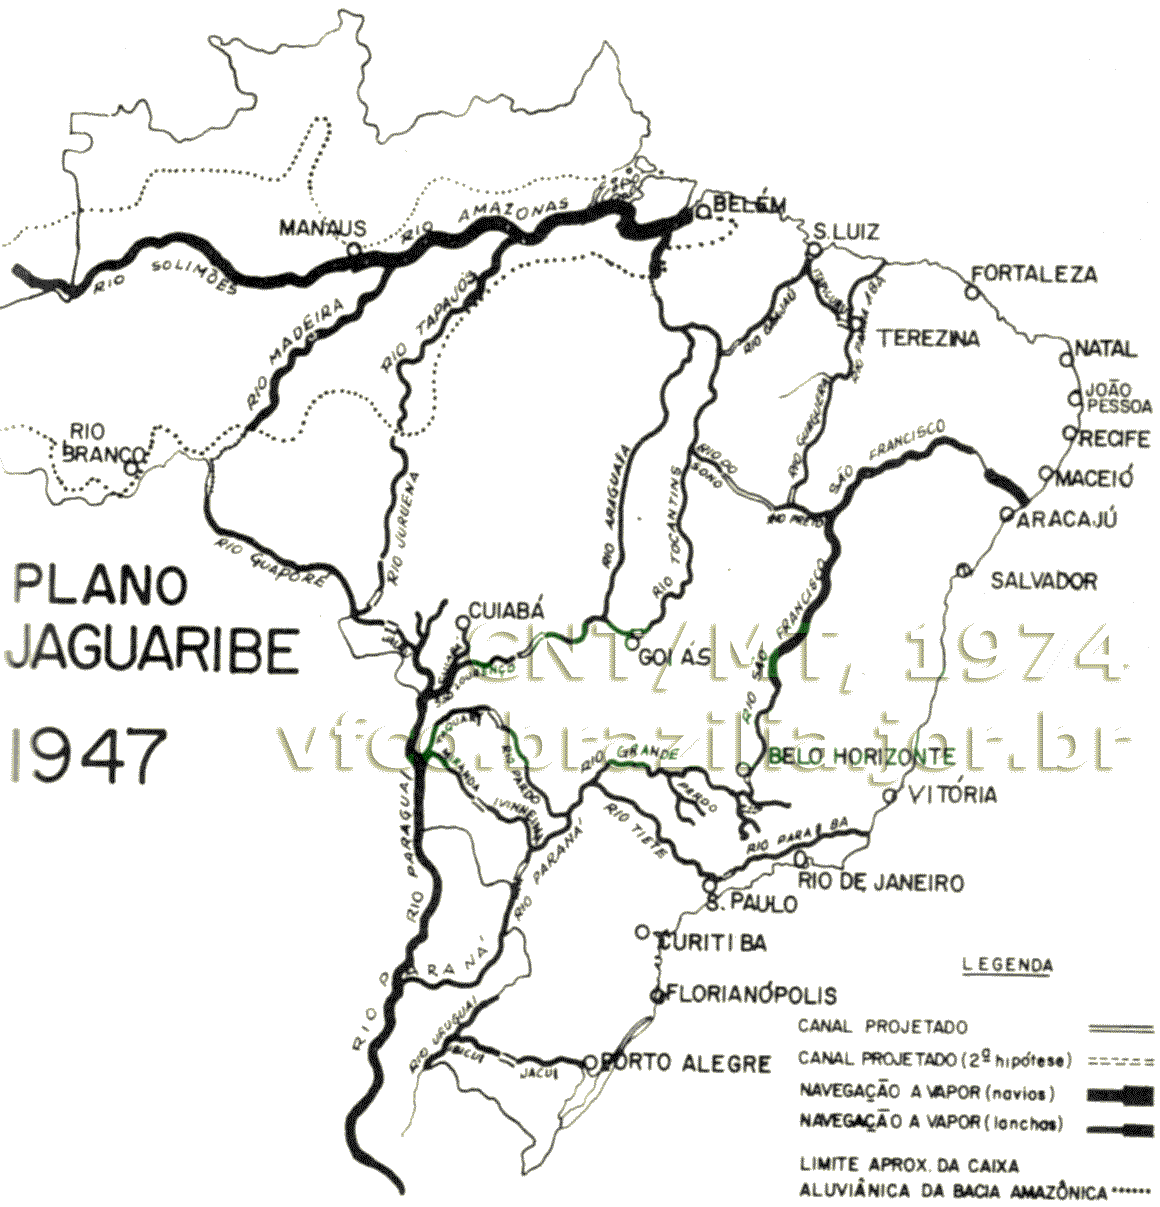 Mapa dos rios navegáveis, hidrovias e canais de navegação do Plano Jaguaribe, de 1947